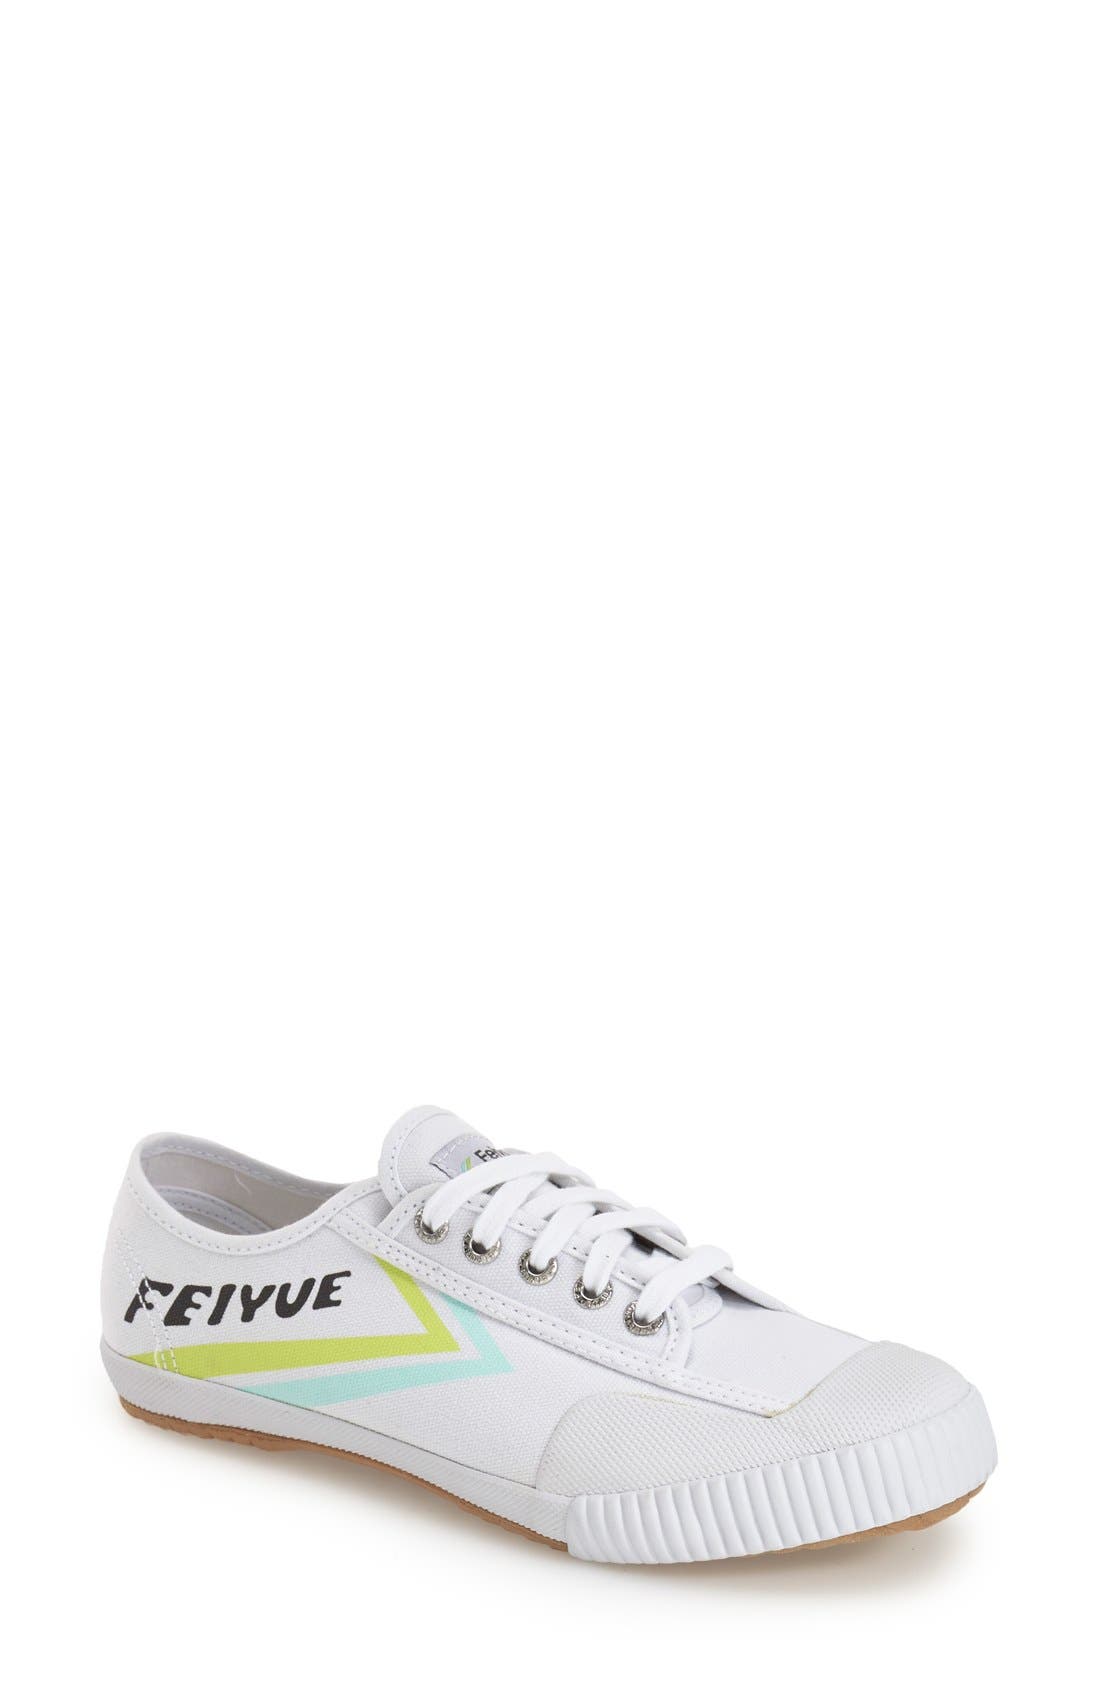 Feiyue. 'Fe Lo Classic' Canvas Sneaker 